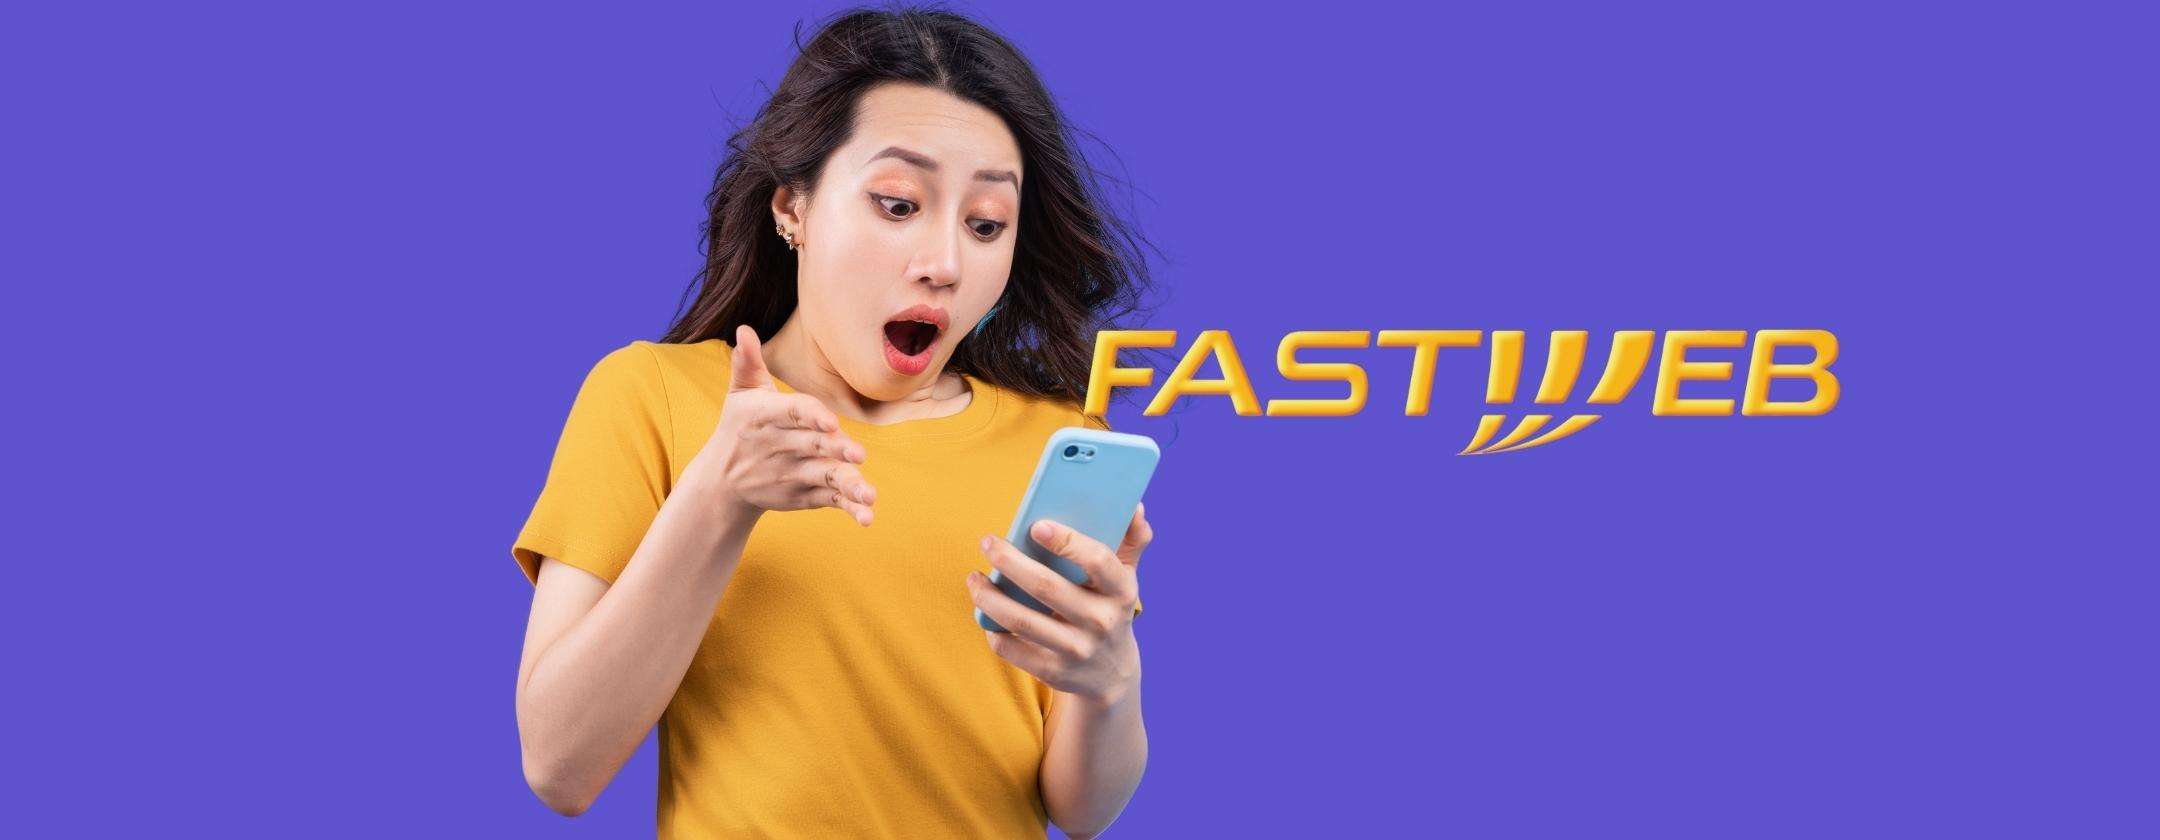 Fastweb Mobile: 150 Giga e chiamate illimitate a un prezzo pazzesco